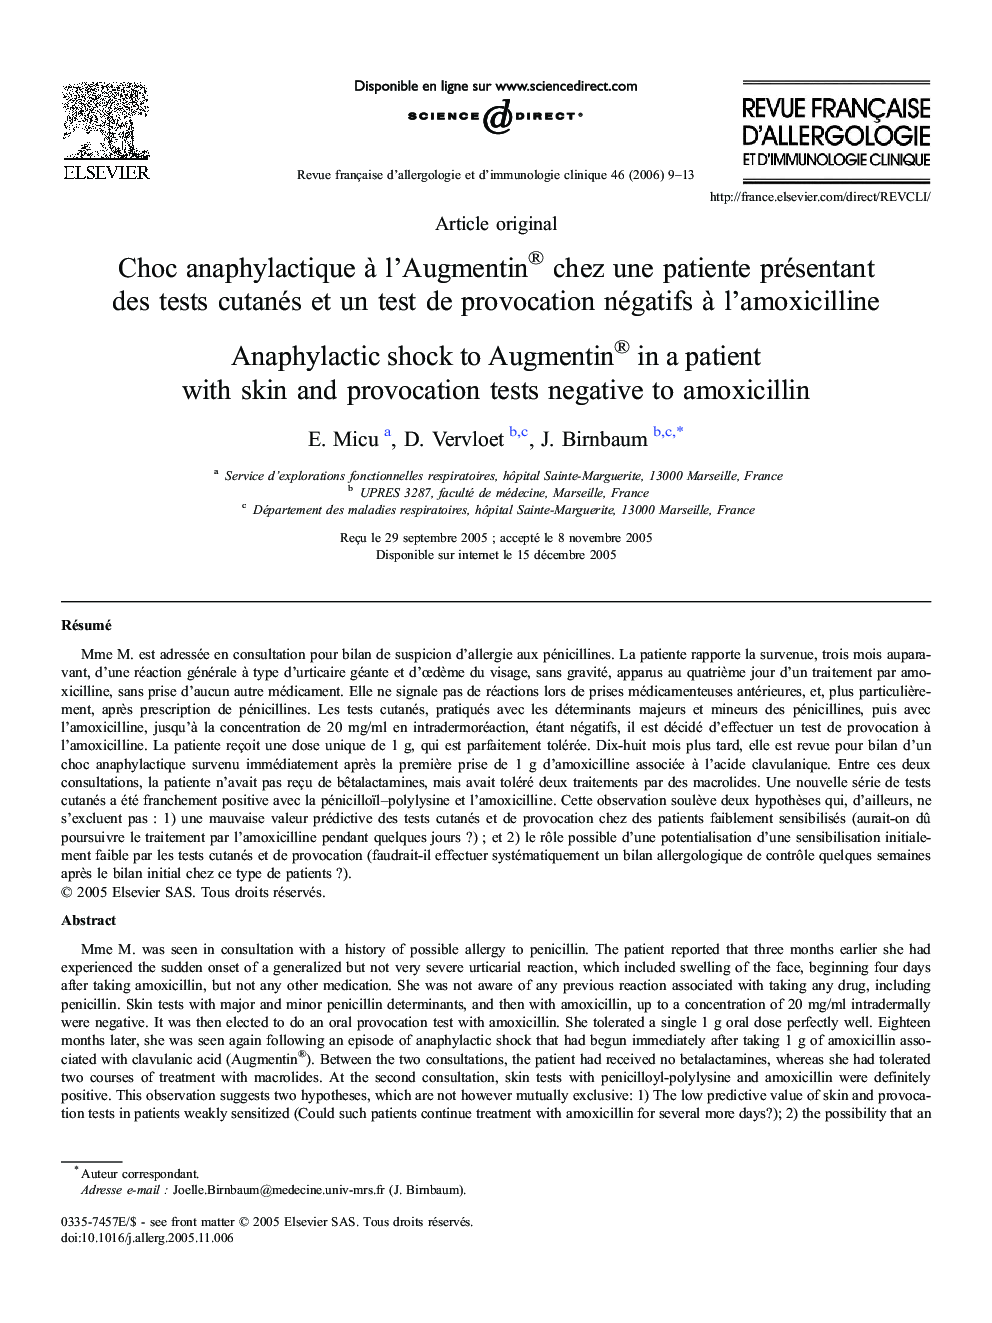 Choc anaphylactique à l'Augmentin® chez une patiente présentant des tests cutanés et un test de provocation négatifs à l'amoxicilline